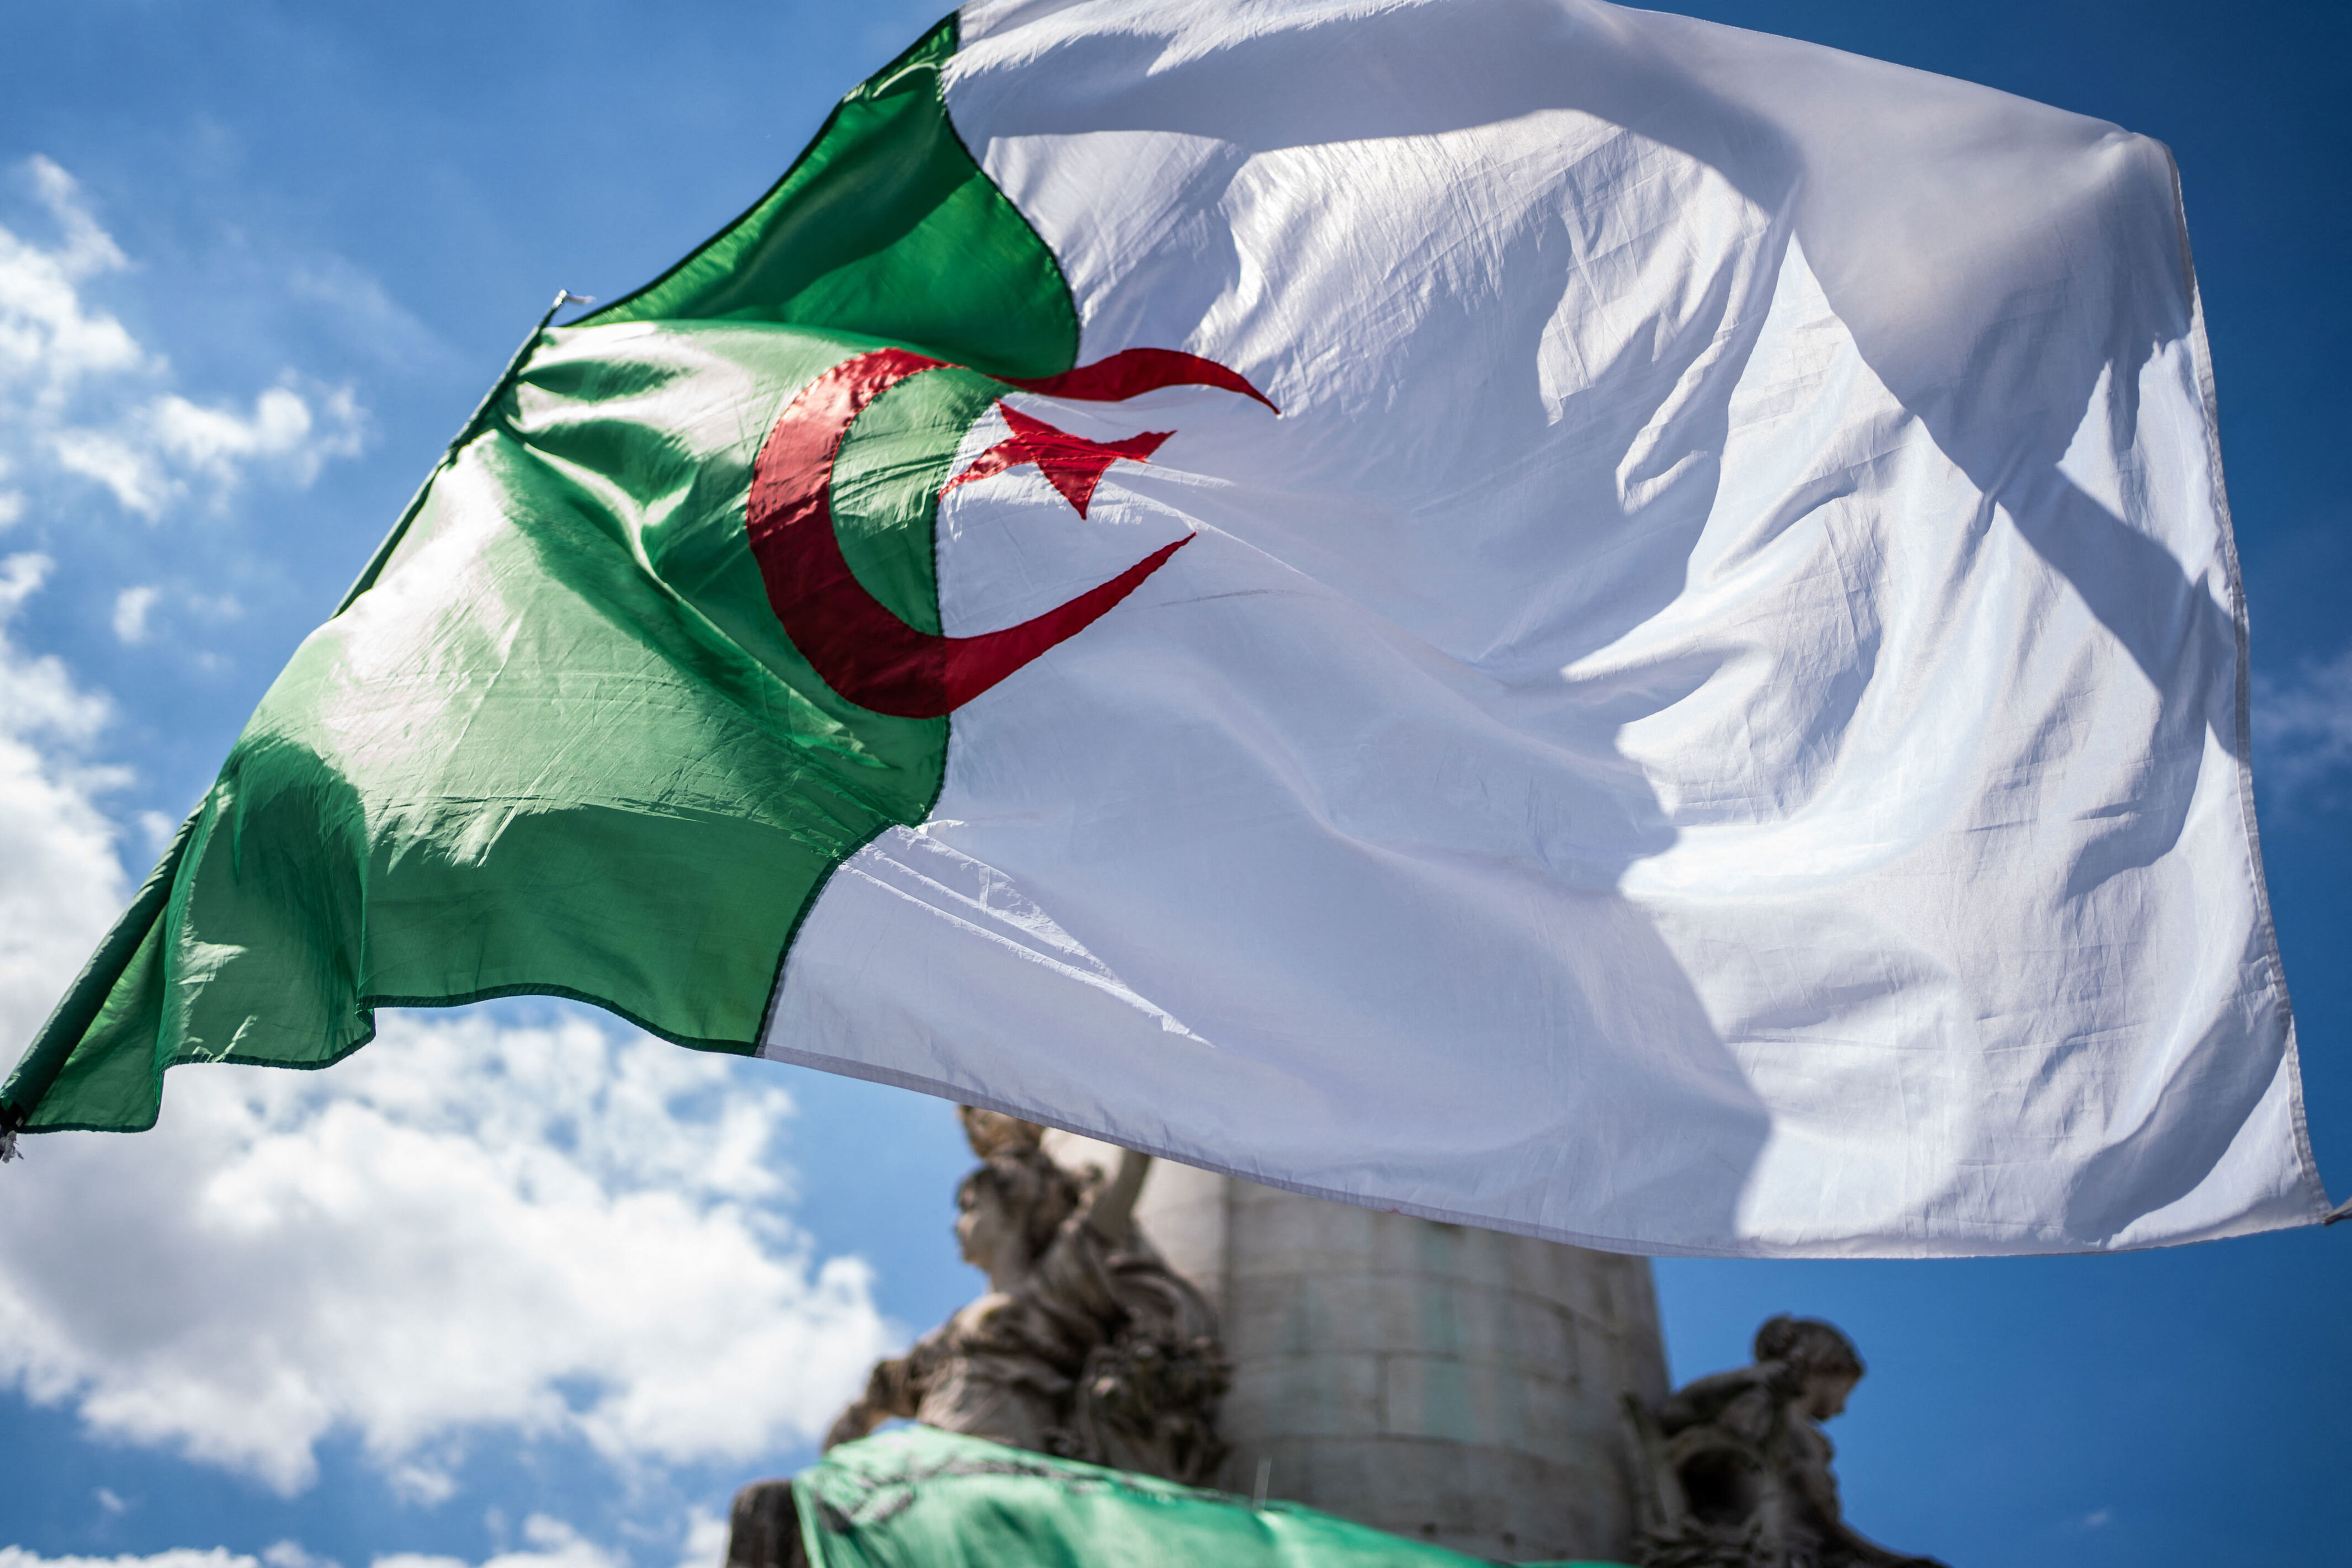 les rassemblements liés à l’algérie interdits ce dimanche à paris